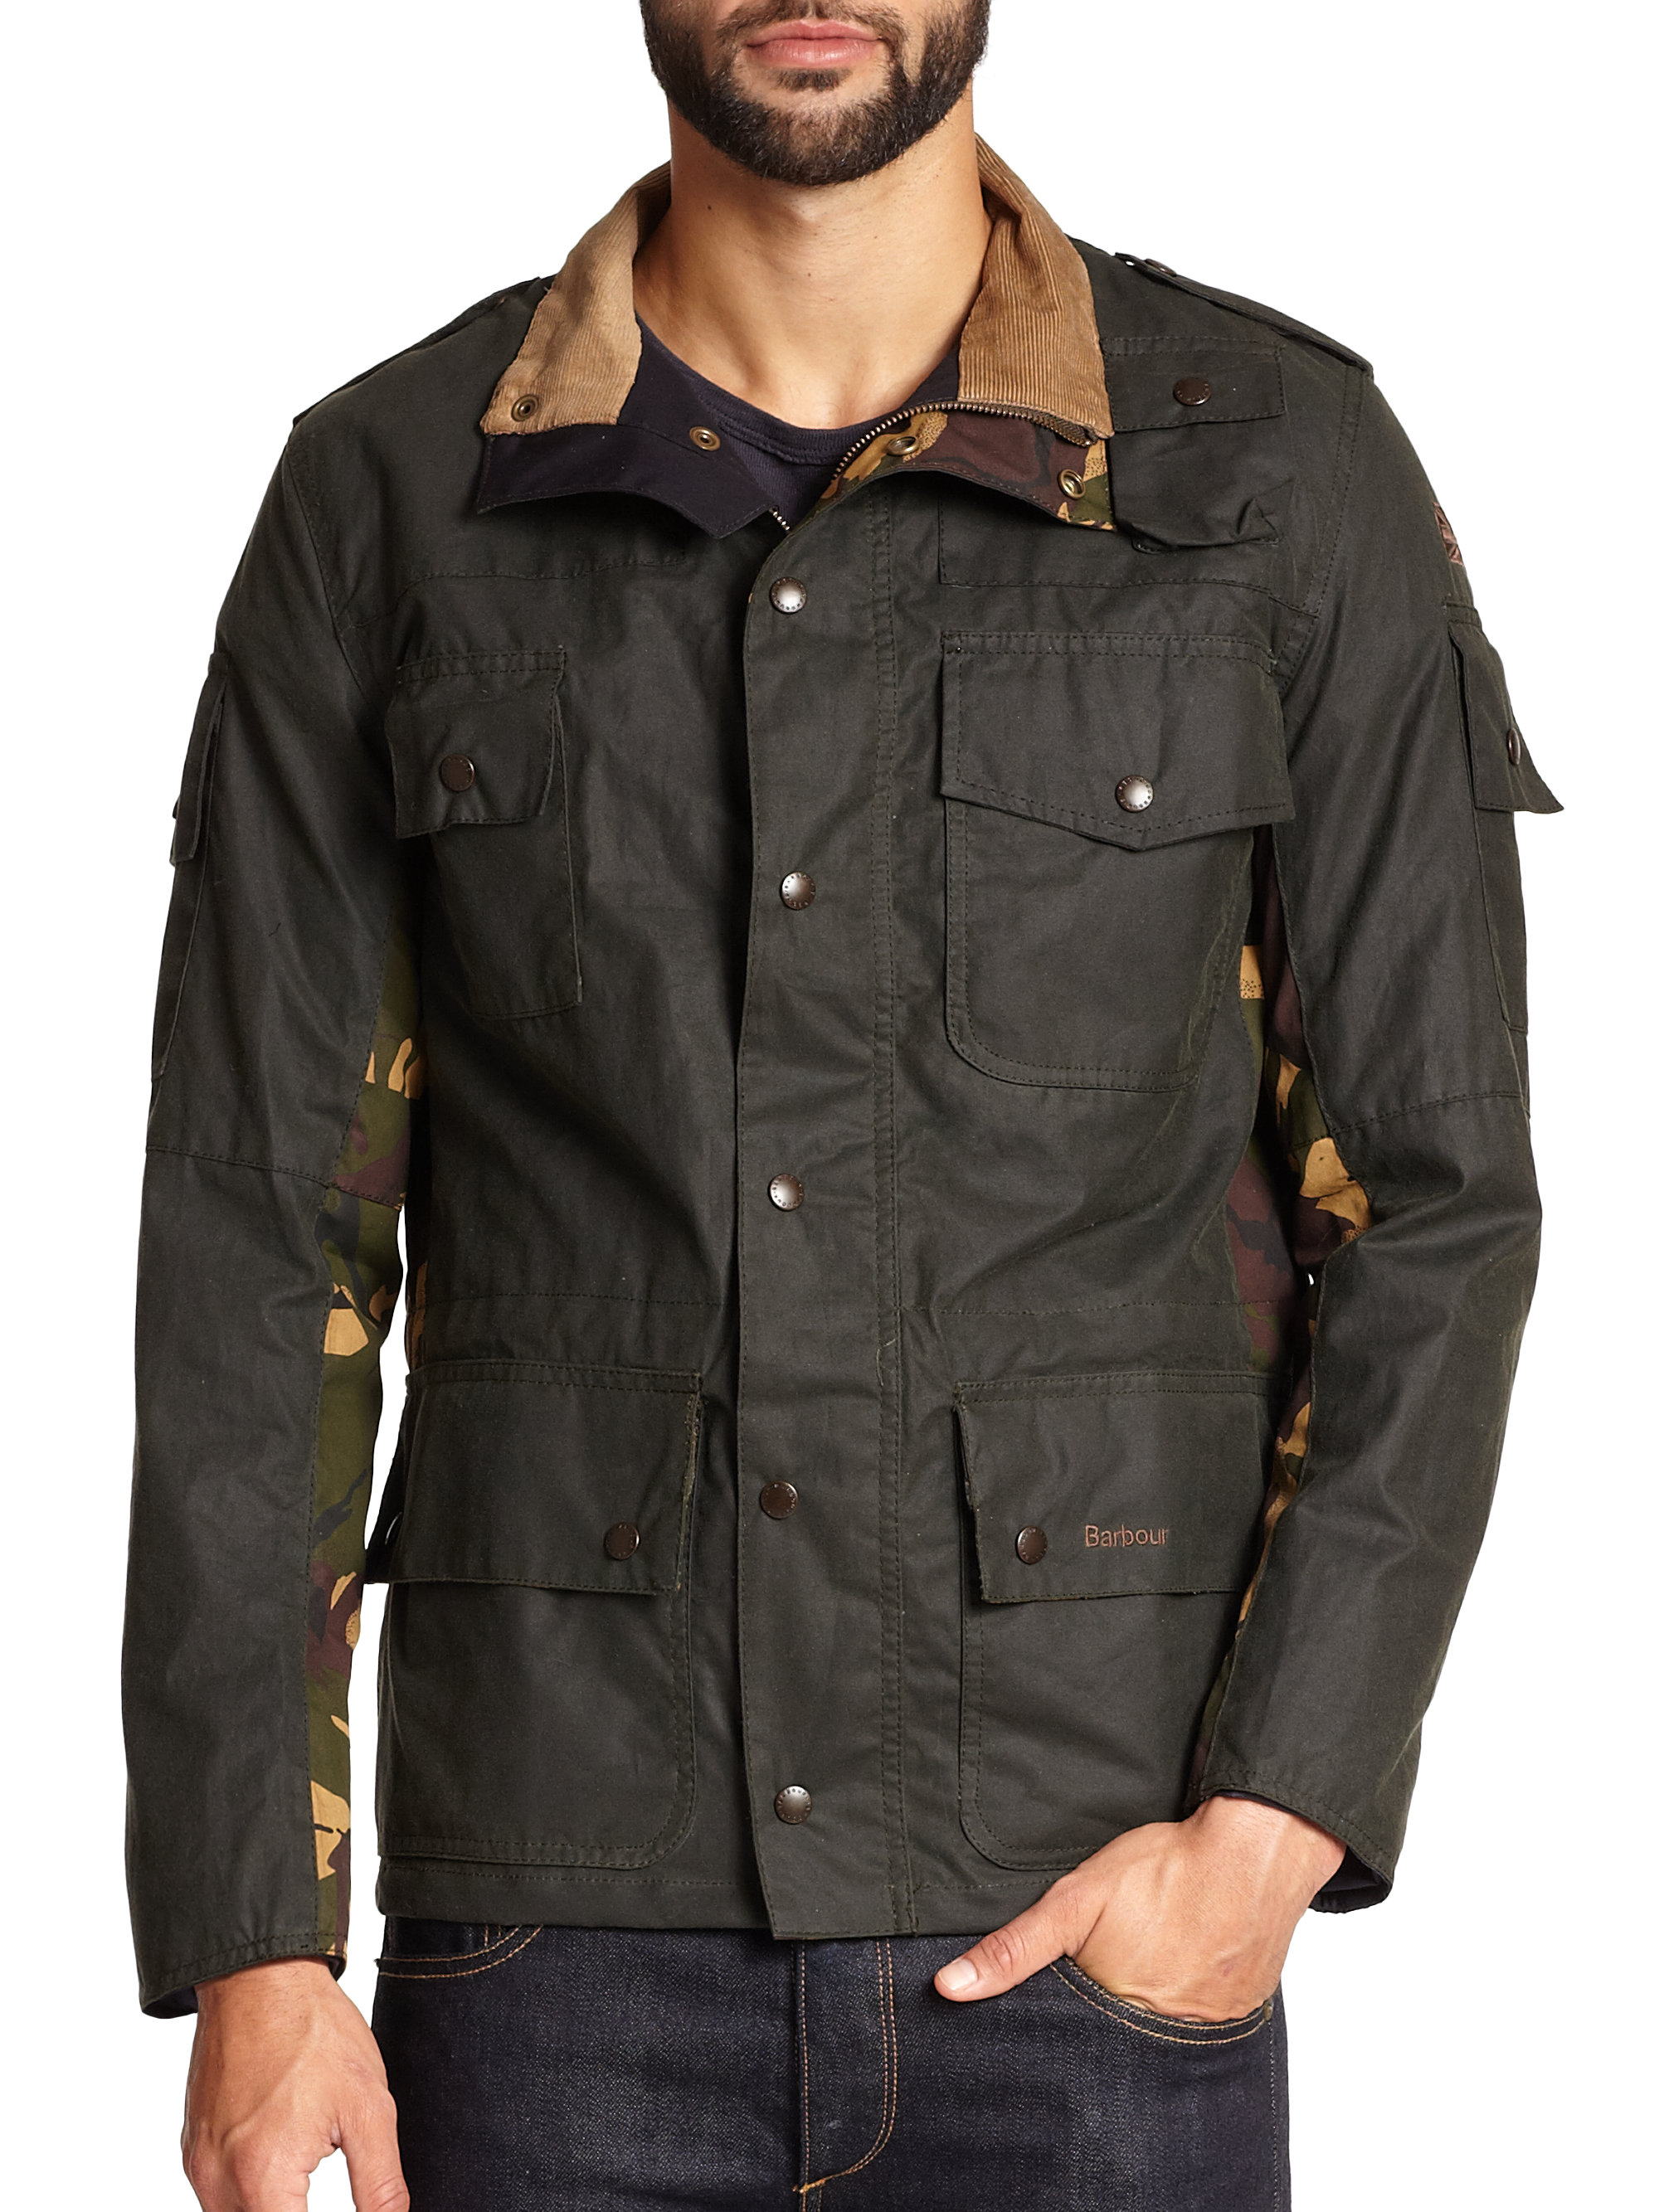 cowen commando jacket